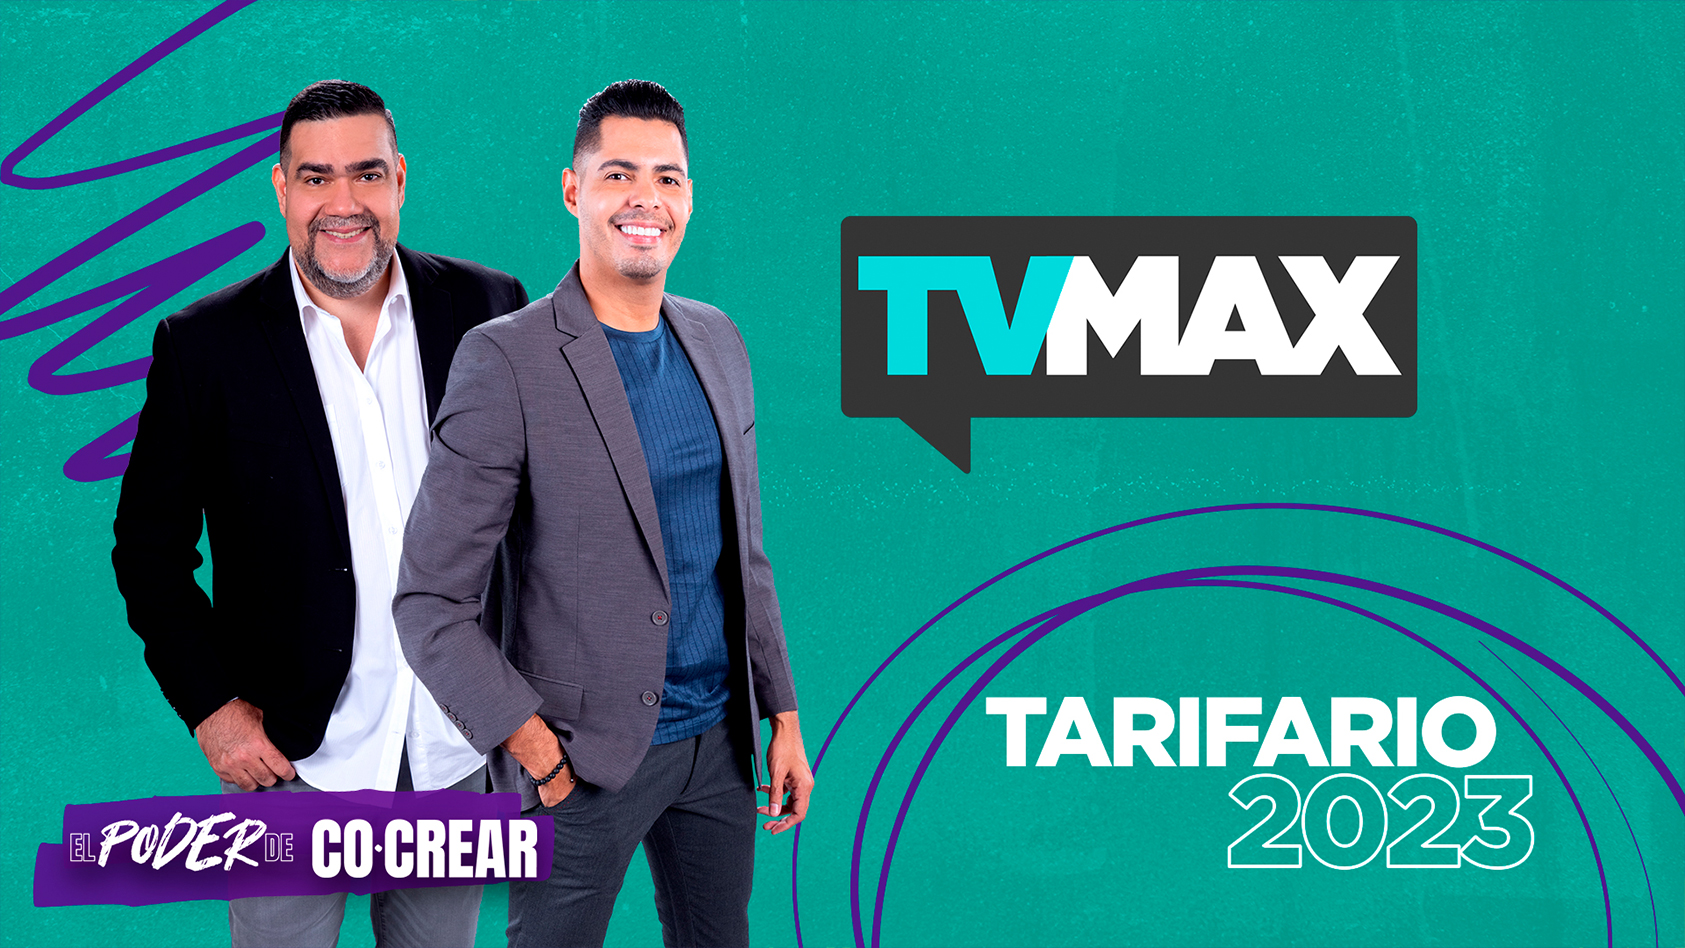 TVMax Tarifa Regular 2023